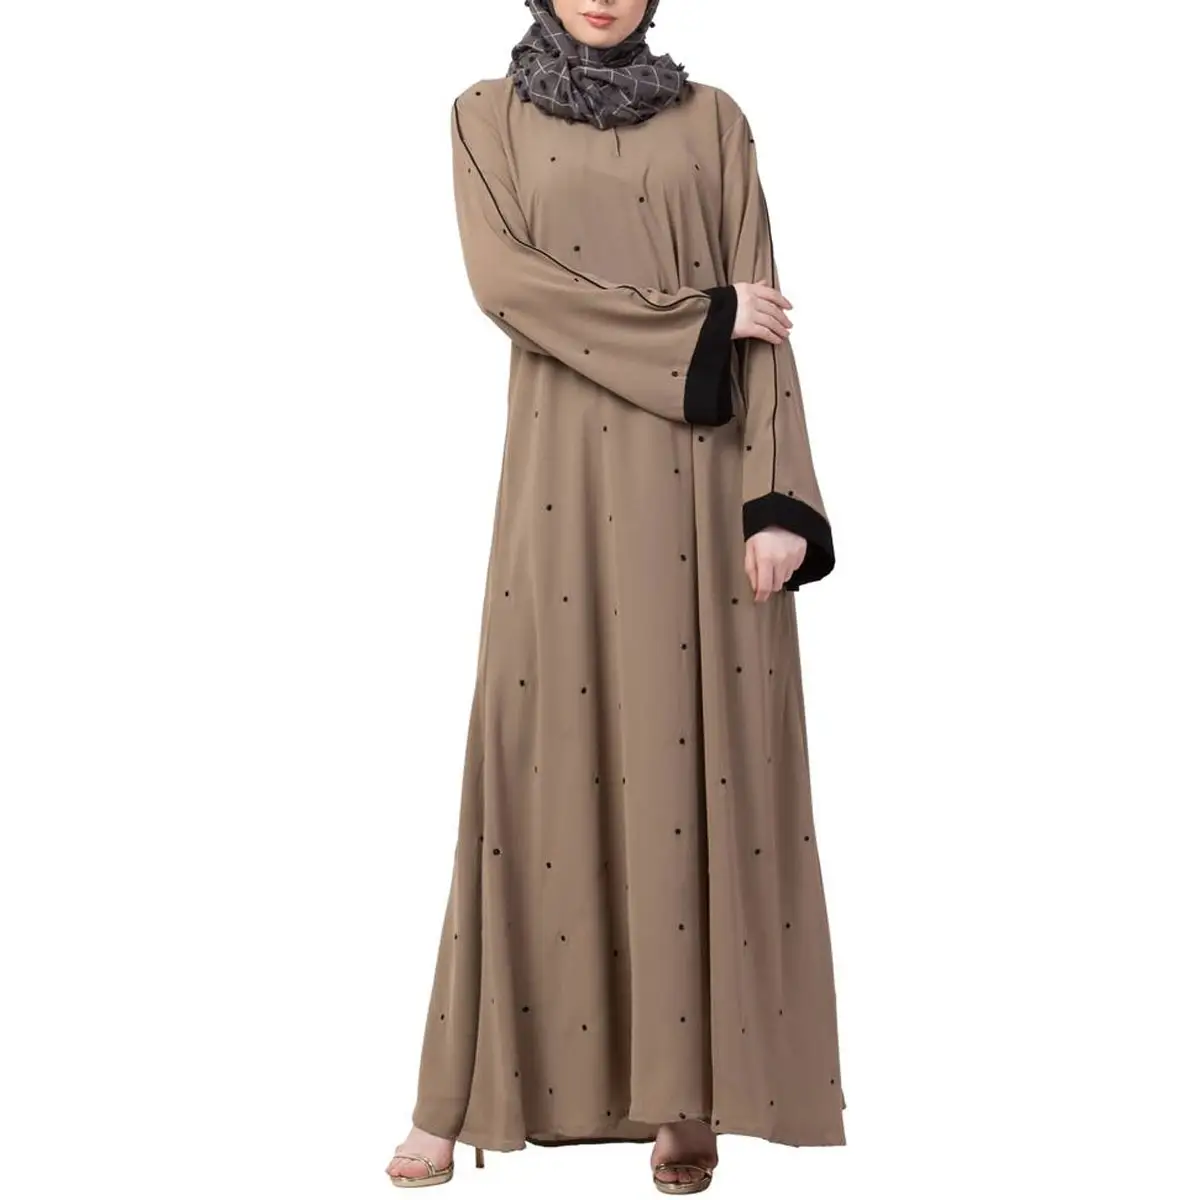 ארבעה עונתי נשים בגדים אסלאמיים העבאיה 2022 חדש מוצר מוסלמי גבירותיי תפרים ניגוד ארוך העבאיה ג 'ובה עם פרטי דש